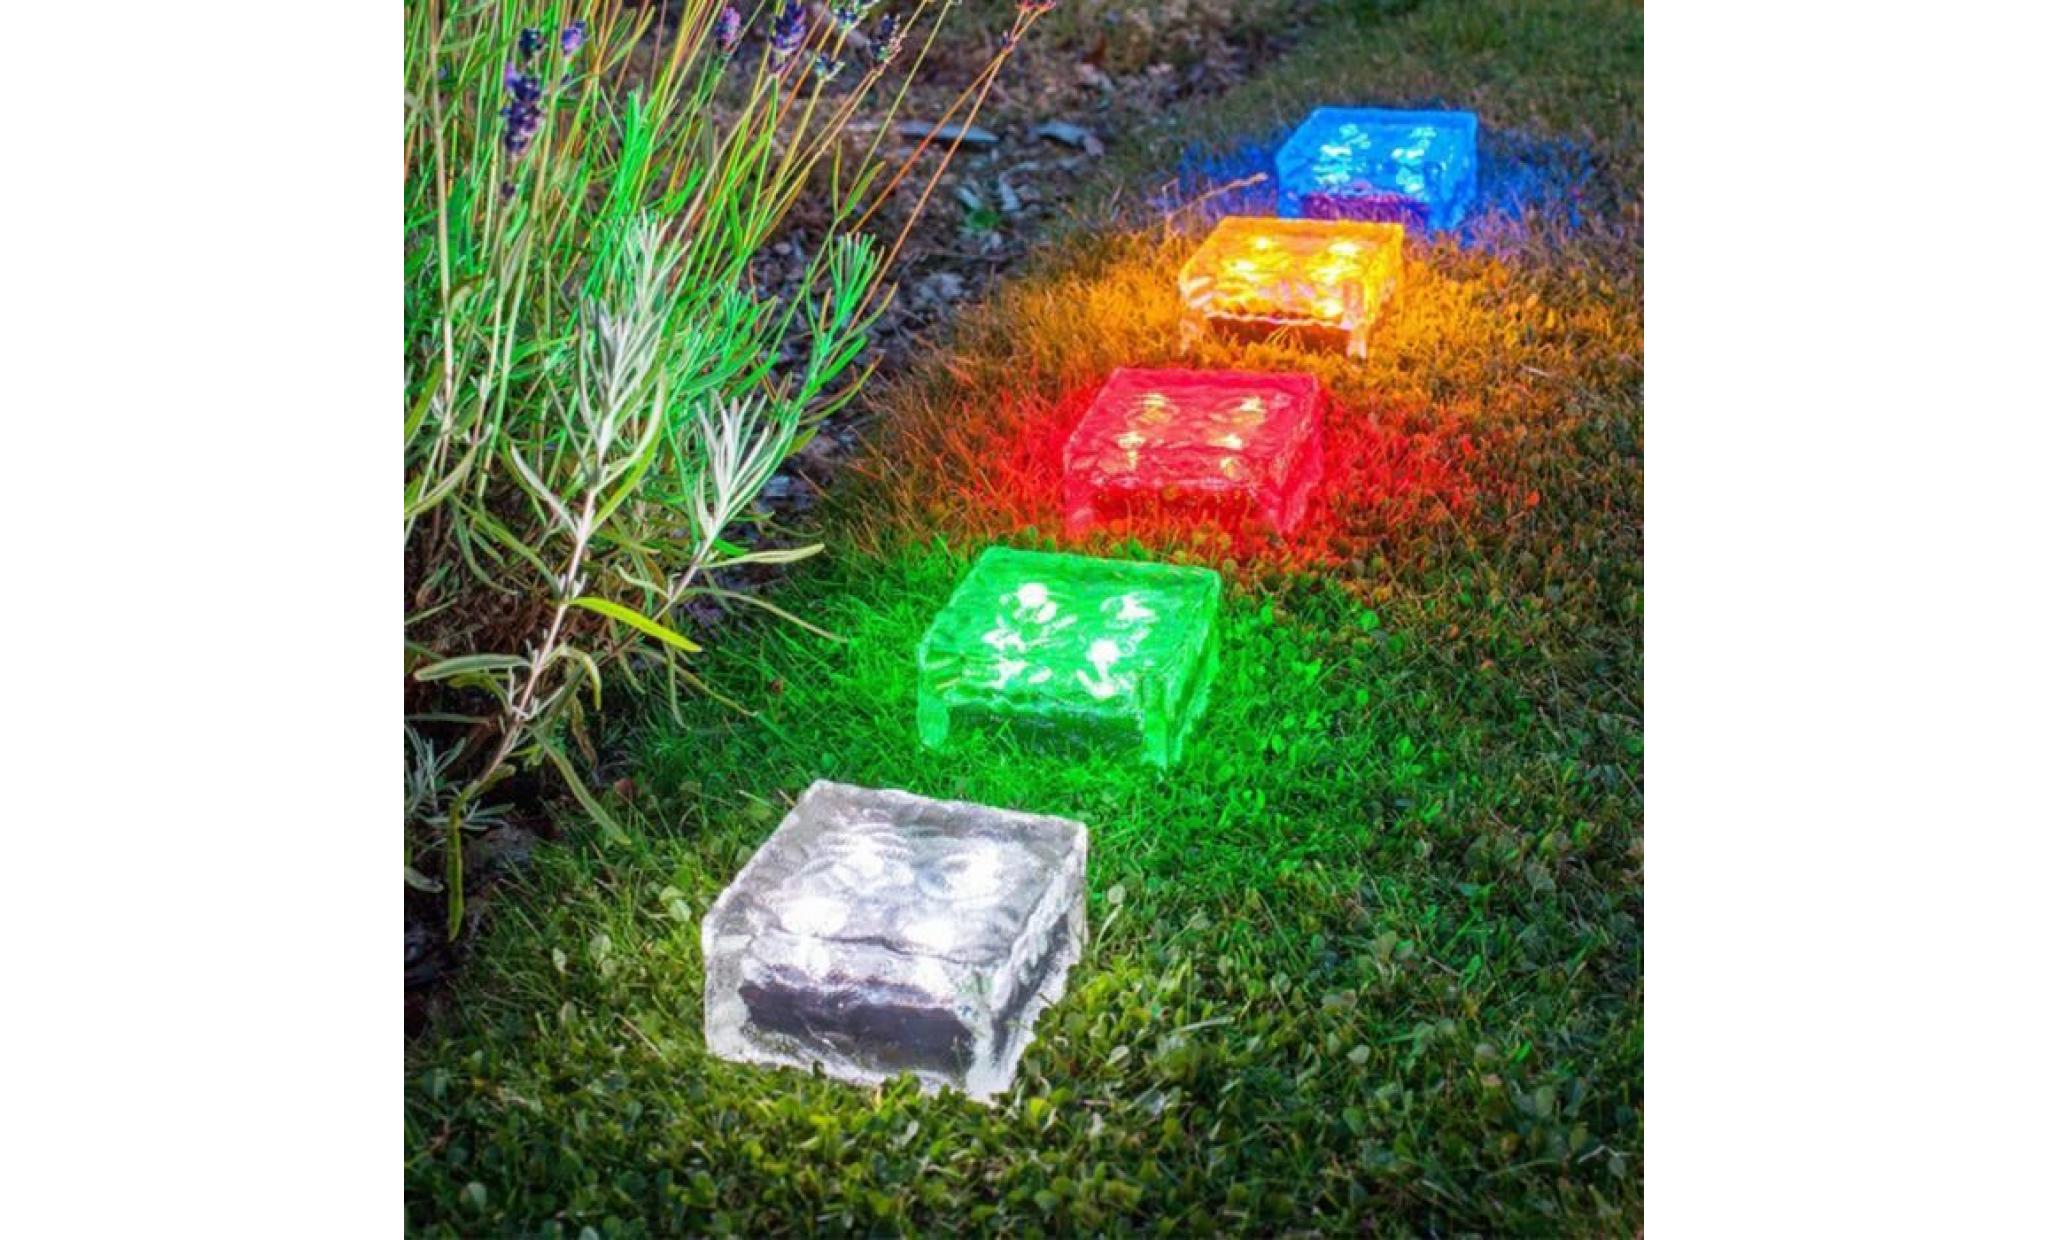 borne solaire solaire imperméable à l'eau led rock light path jardin ice cube brick decor #la 305 pas cher